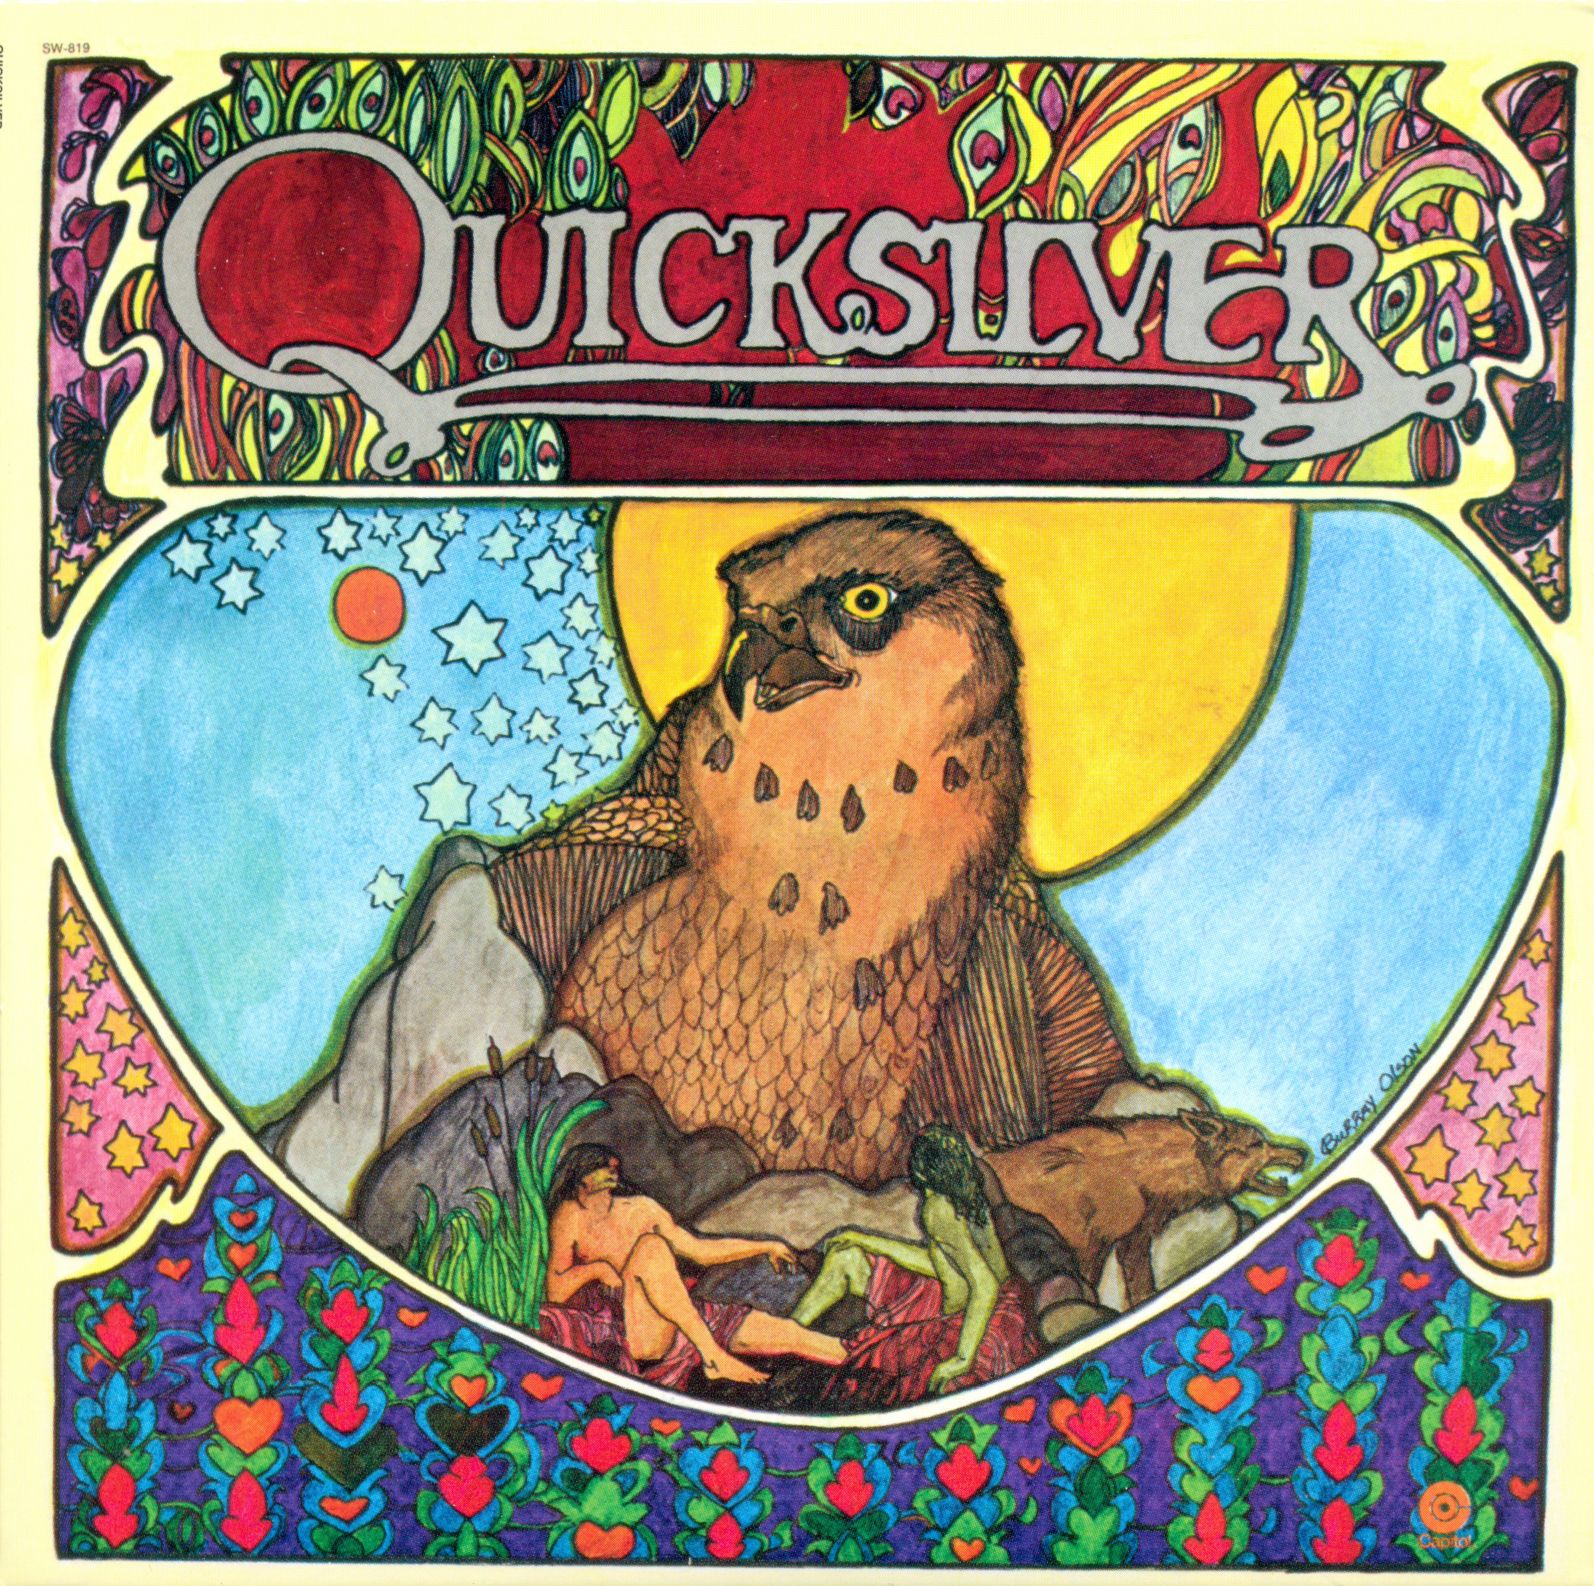 Quicksilver Messenger Service - Quicksilver - 1971